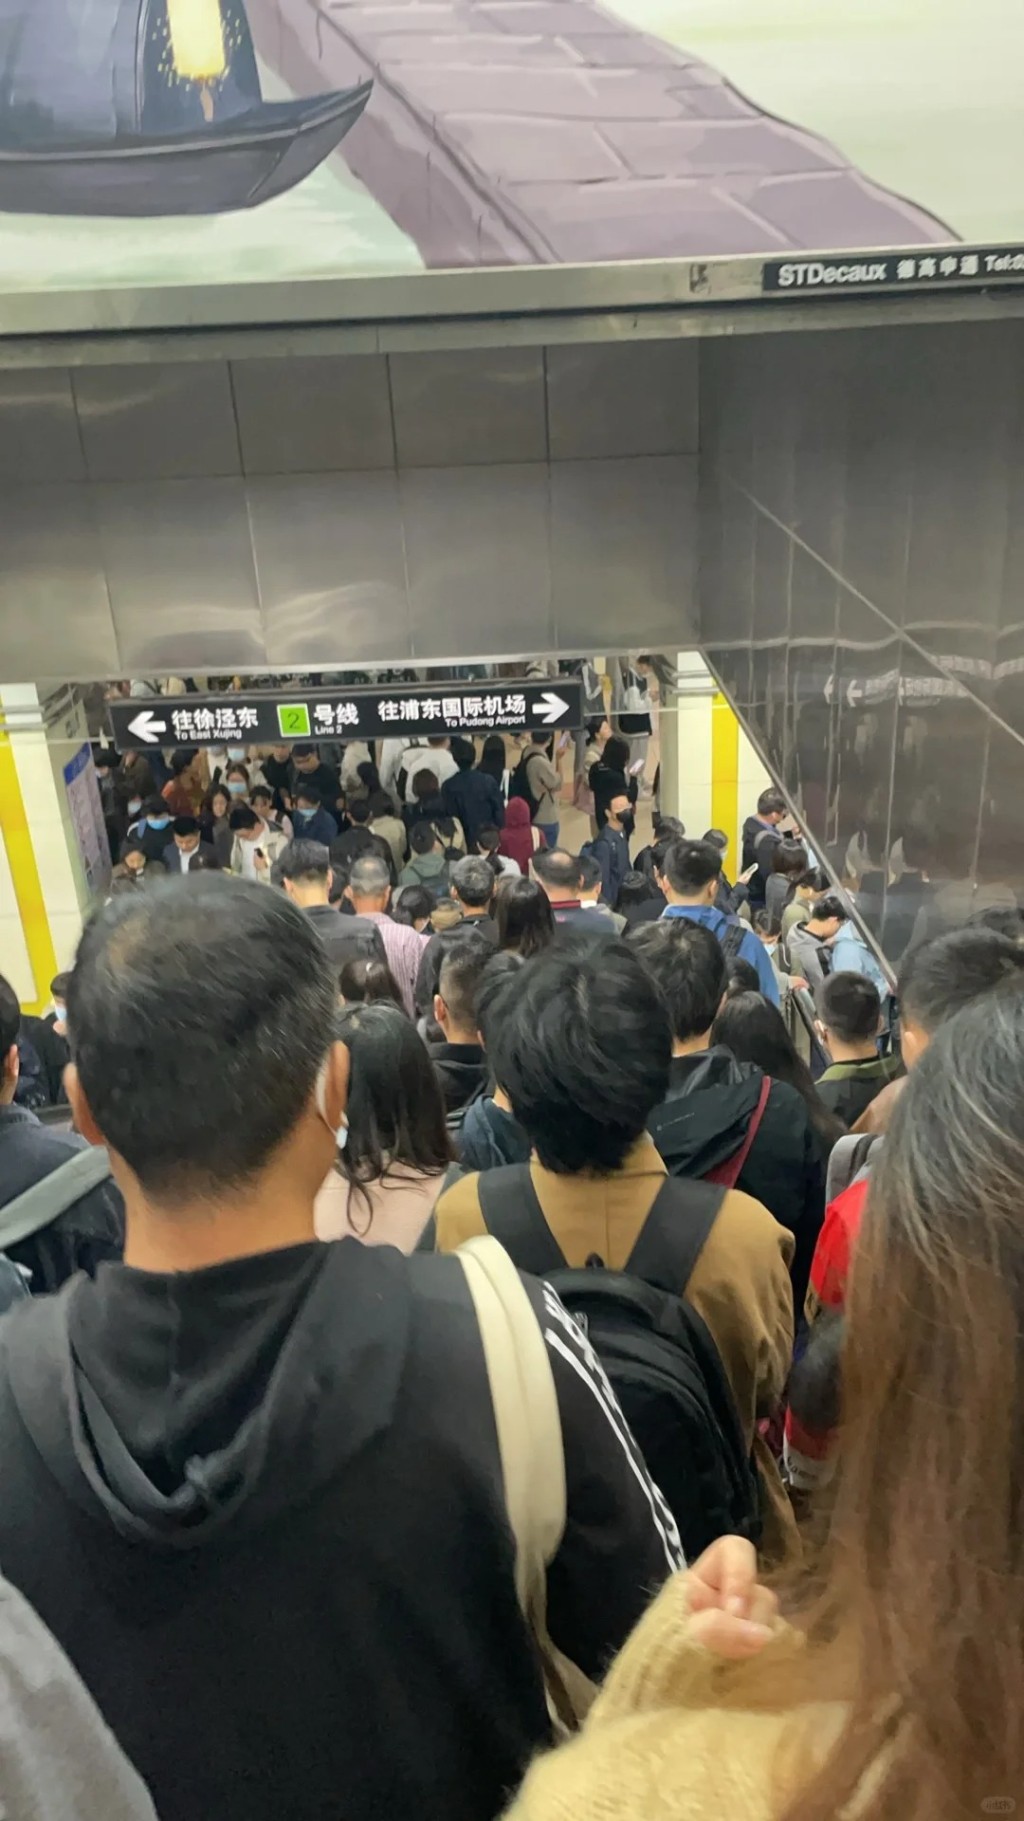 内地大城市的地铁，在通勤时间也有人满之患。